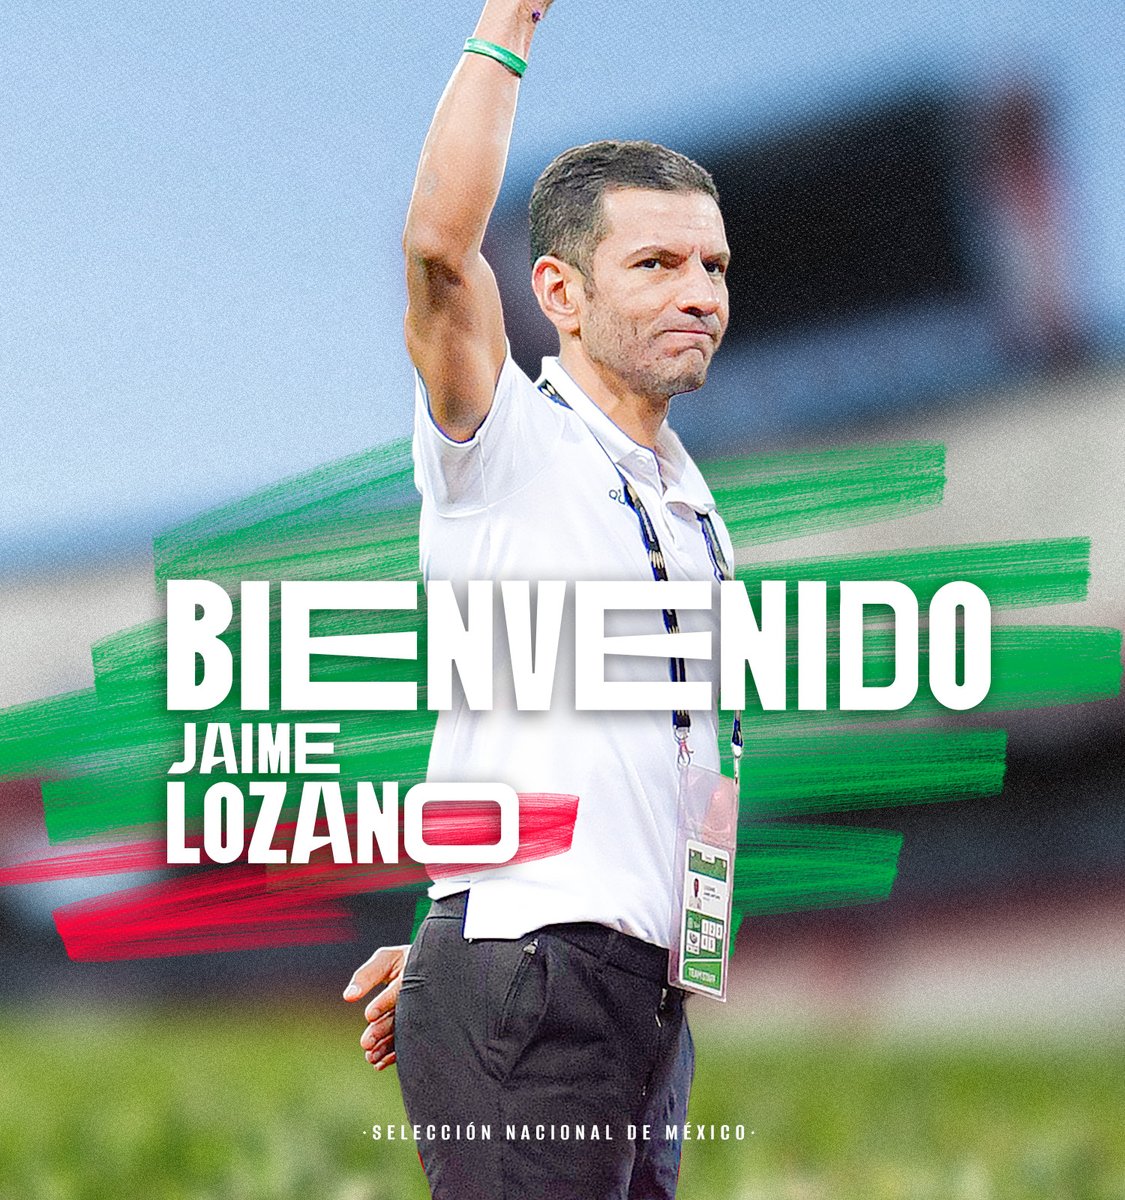 ¡Bienvenido de vuelta a nuestro ex seleccionado y DT medallista olímpico, @jaime_lozano_! 🇲🇽